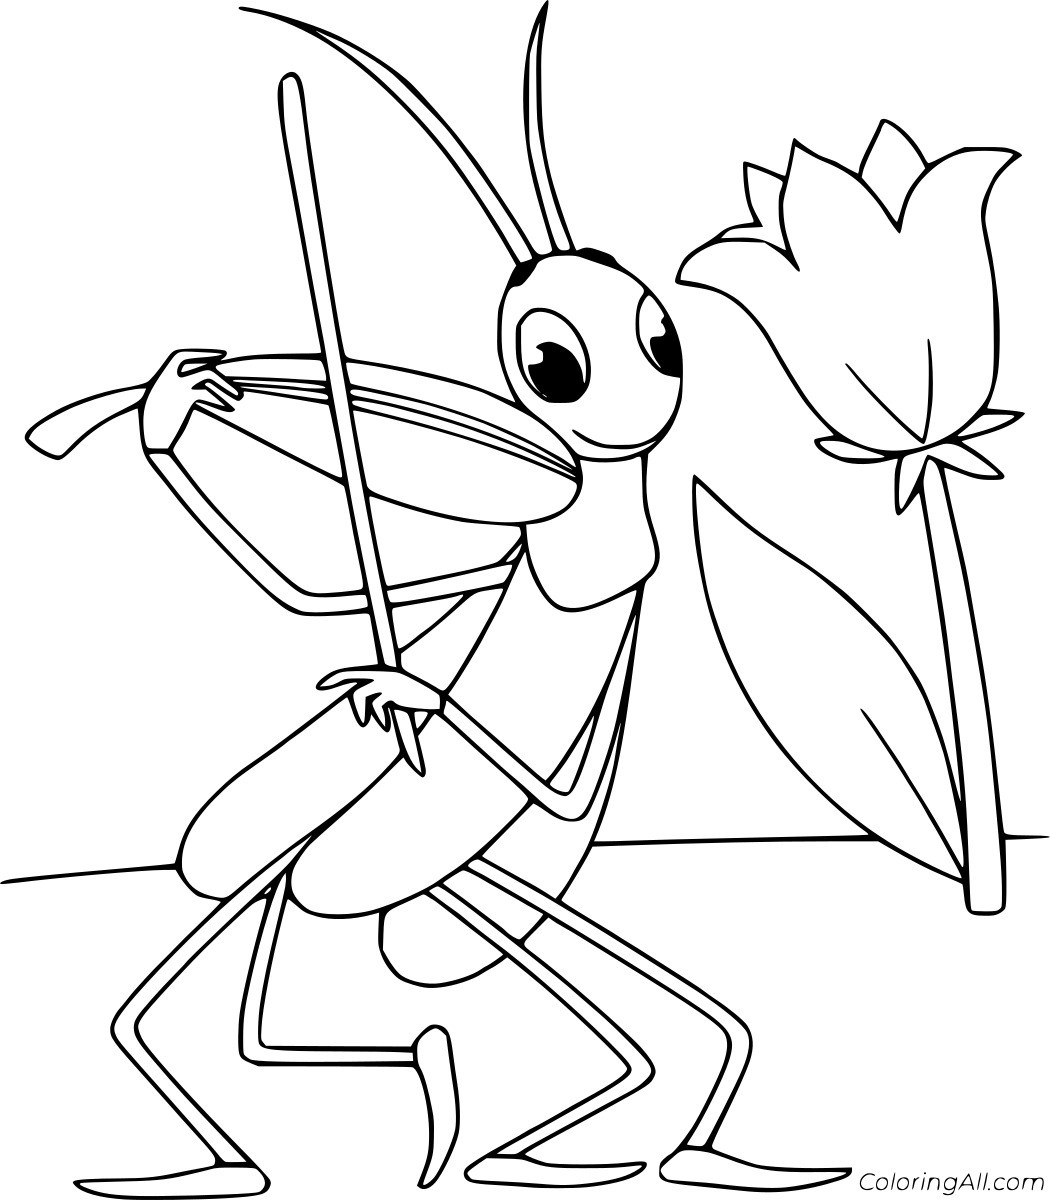 Grasshopper Playing Violin